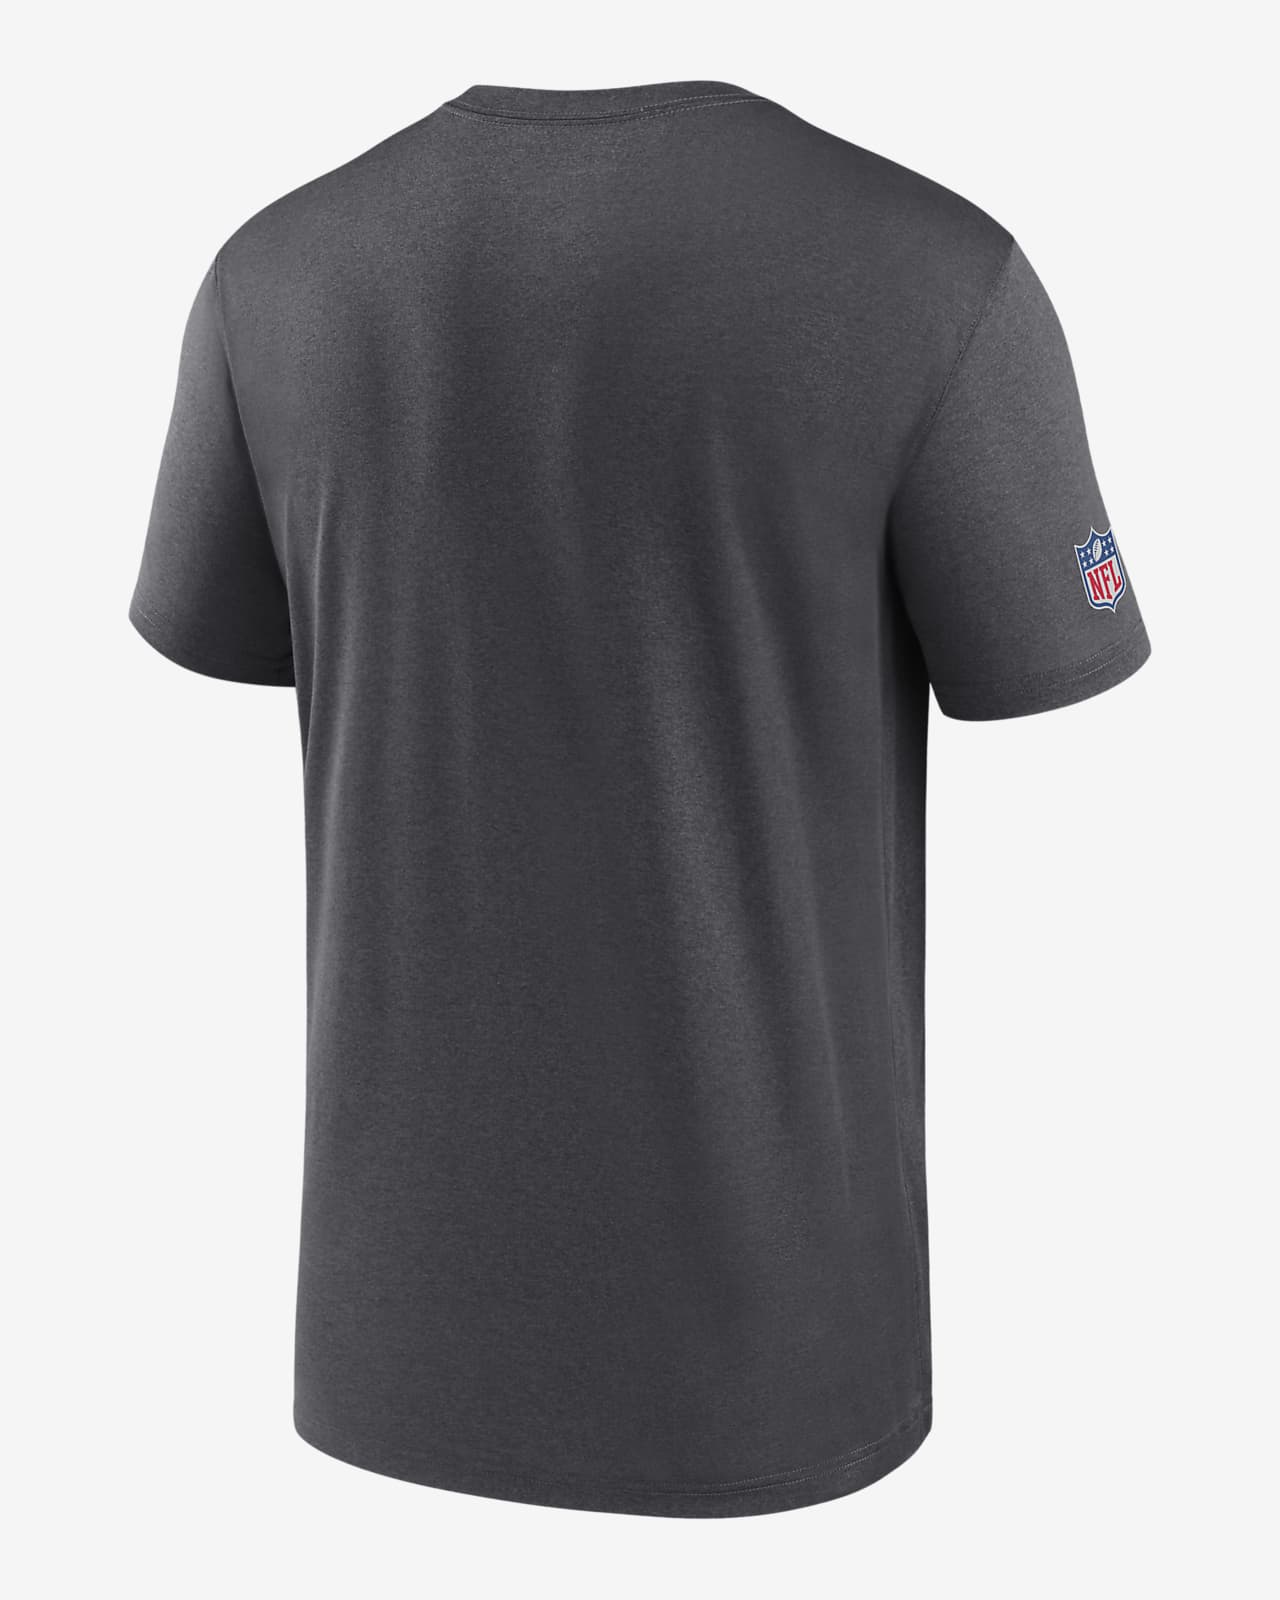 Nike Dri-FIT Infograph (NFL Washington Commanders) Men's T-Shirt.